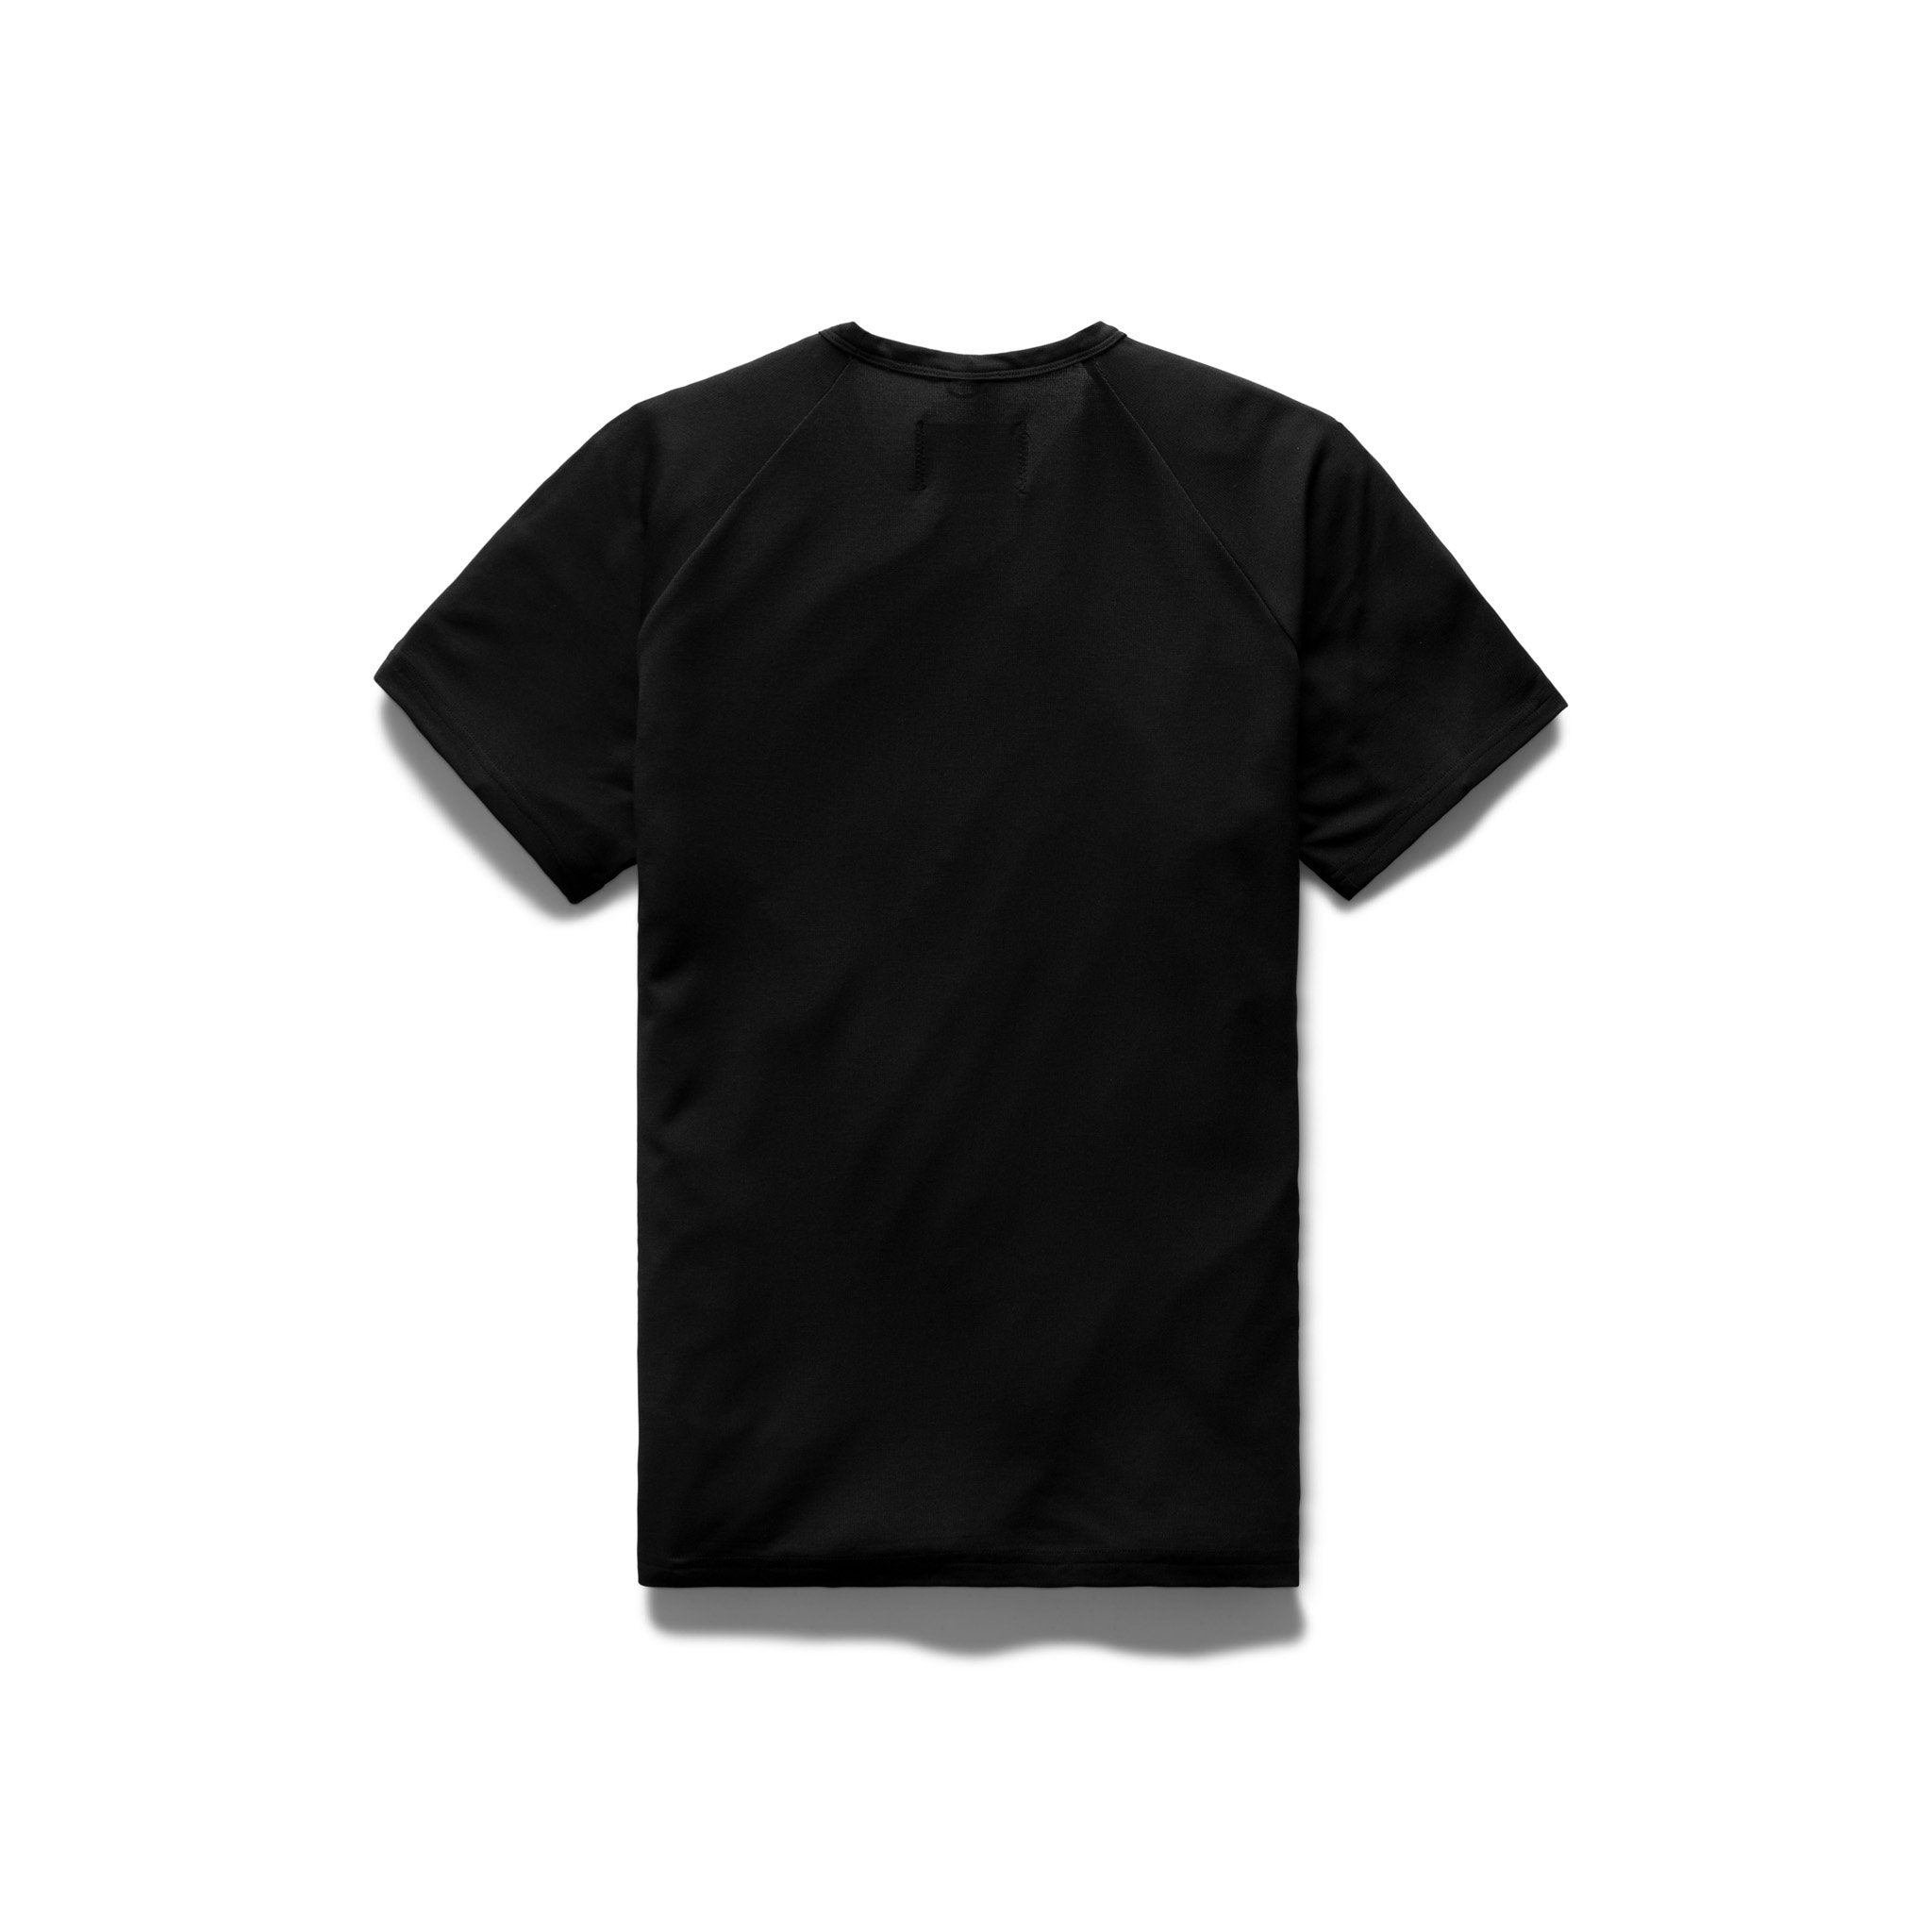 Polartec Delta™ T-shirt